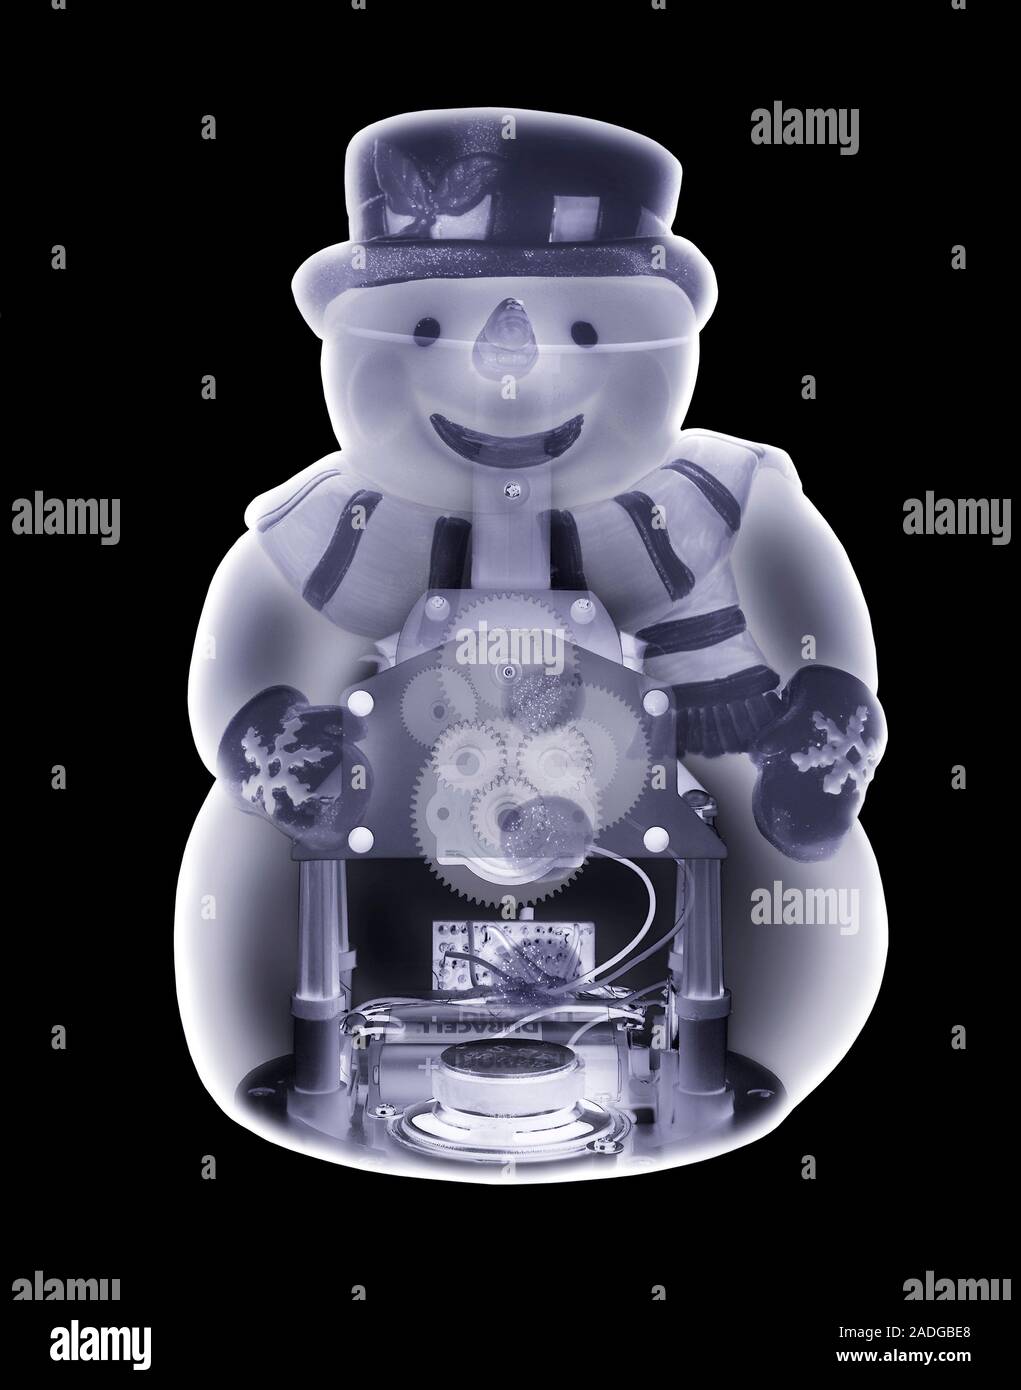 Muñeco de nieve de juguete. X-ray simulado de una novedad muñeco de nieve  de juguete. El mecanismo de engranajes y electrónica dentro del juguete  hace que se reproduzca música y movimiento Fotografía